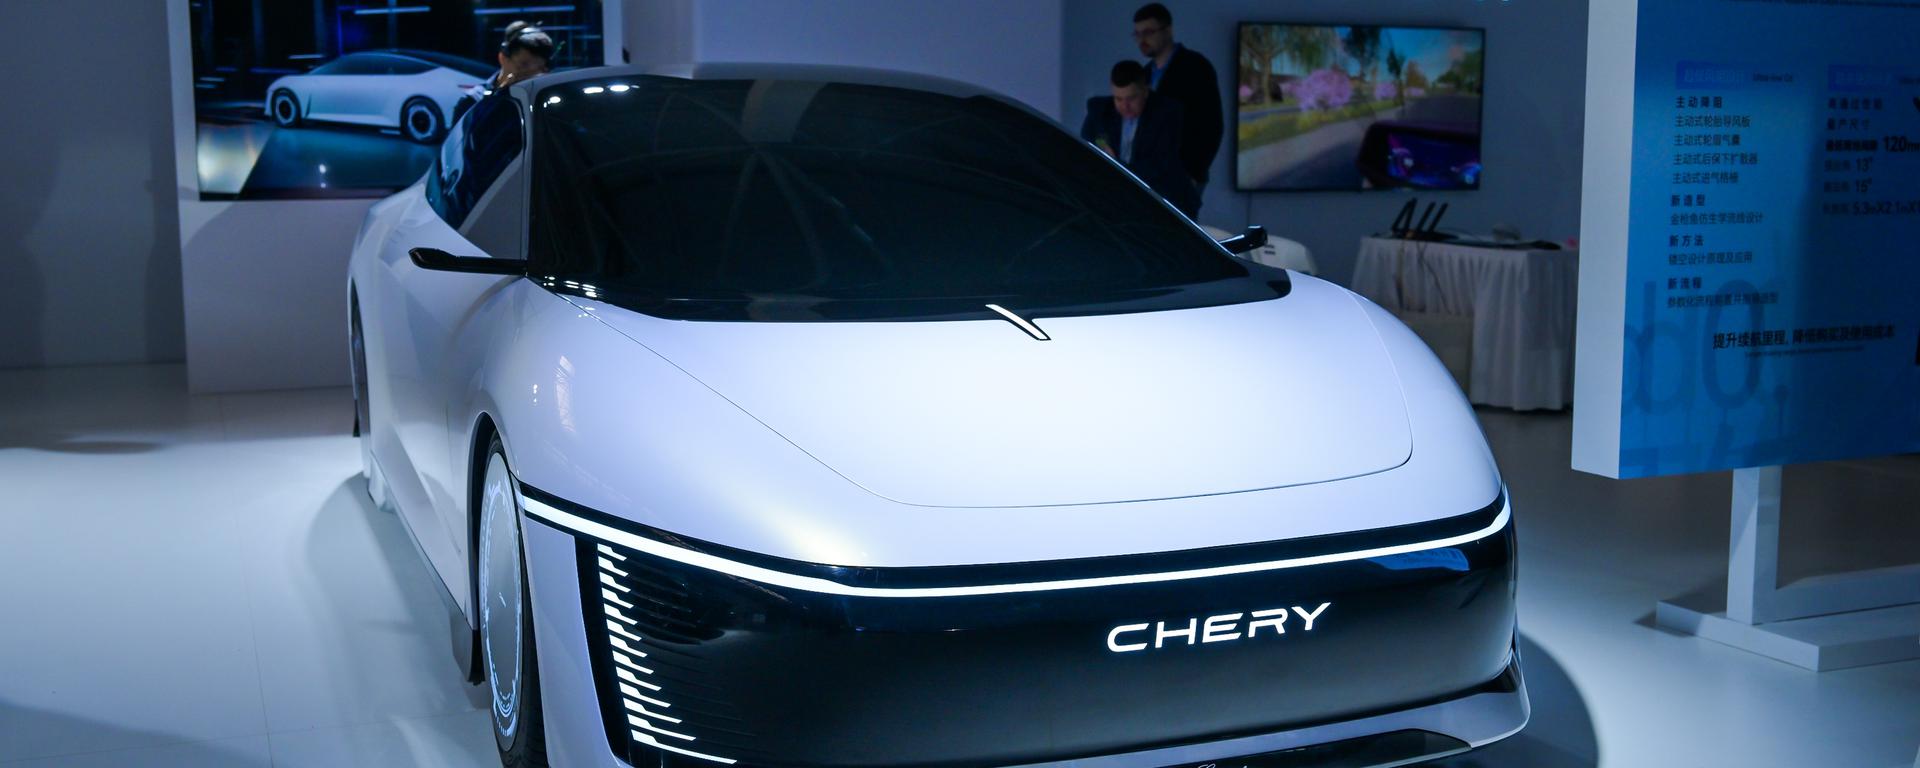 Con inteligencia artificial y carga ultra rápida: así son los nuevos automóviles que presentó Chery en China | FOTOS